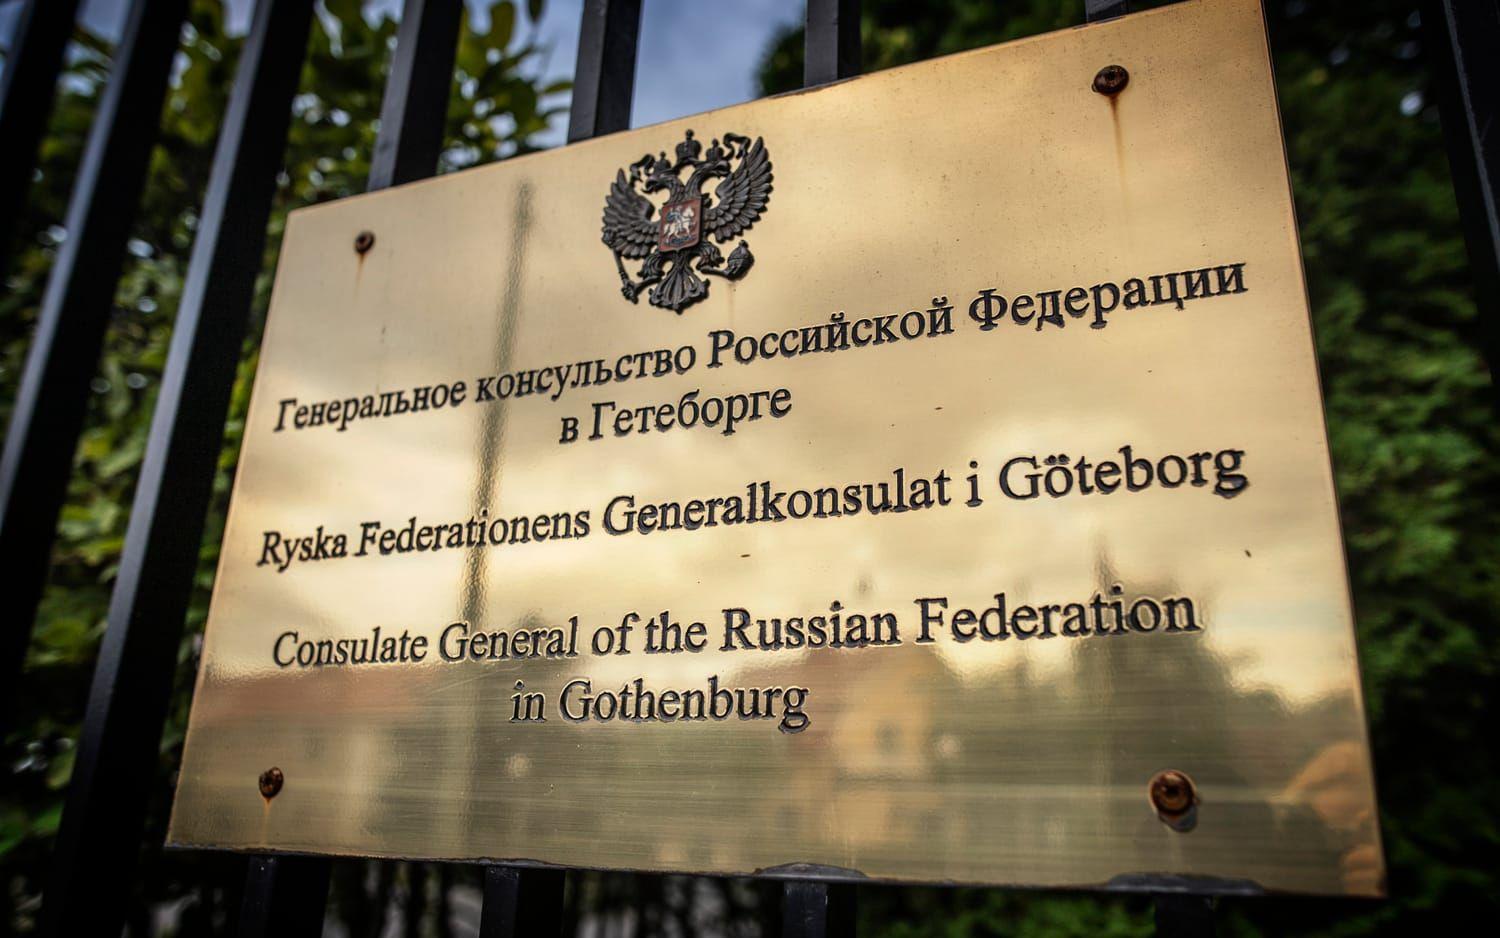 Det beslutet kommer från Ryssland. I sin tur tvingas Sverige att lägga ner sin verksamhet på generalkonsulatet i St Petersburg.